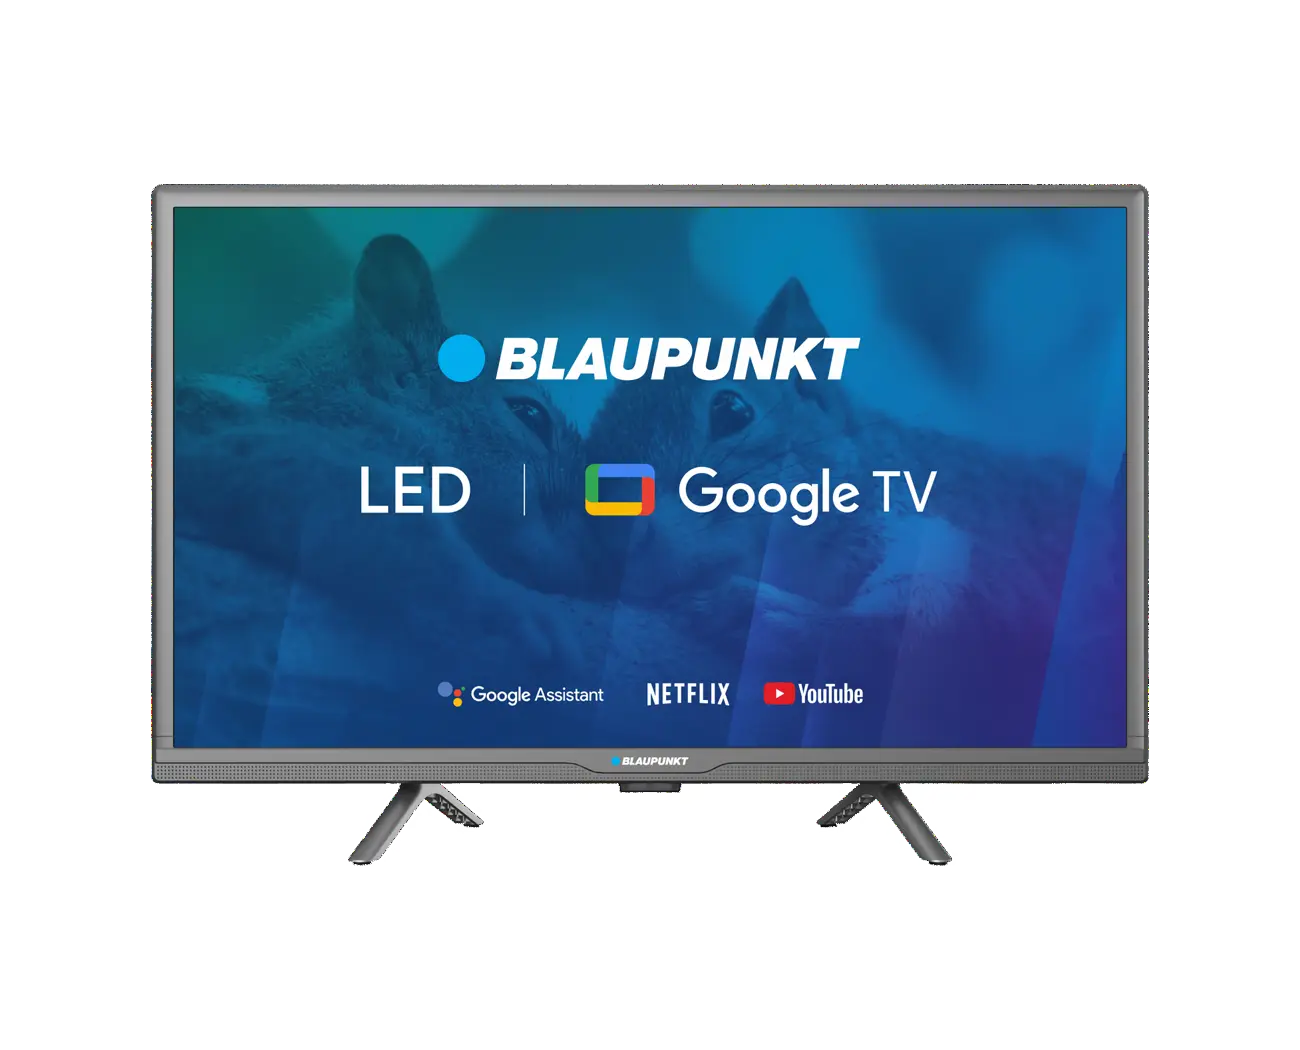 HD Google TV Blaupunkt 24HBG5000